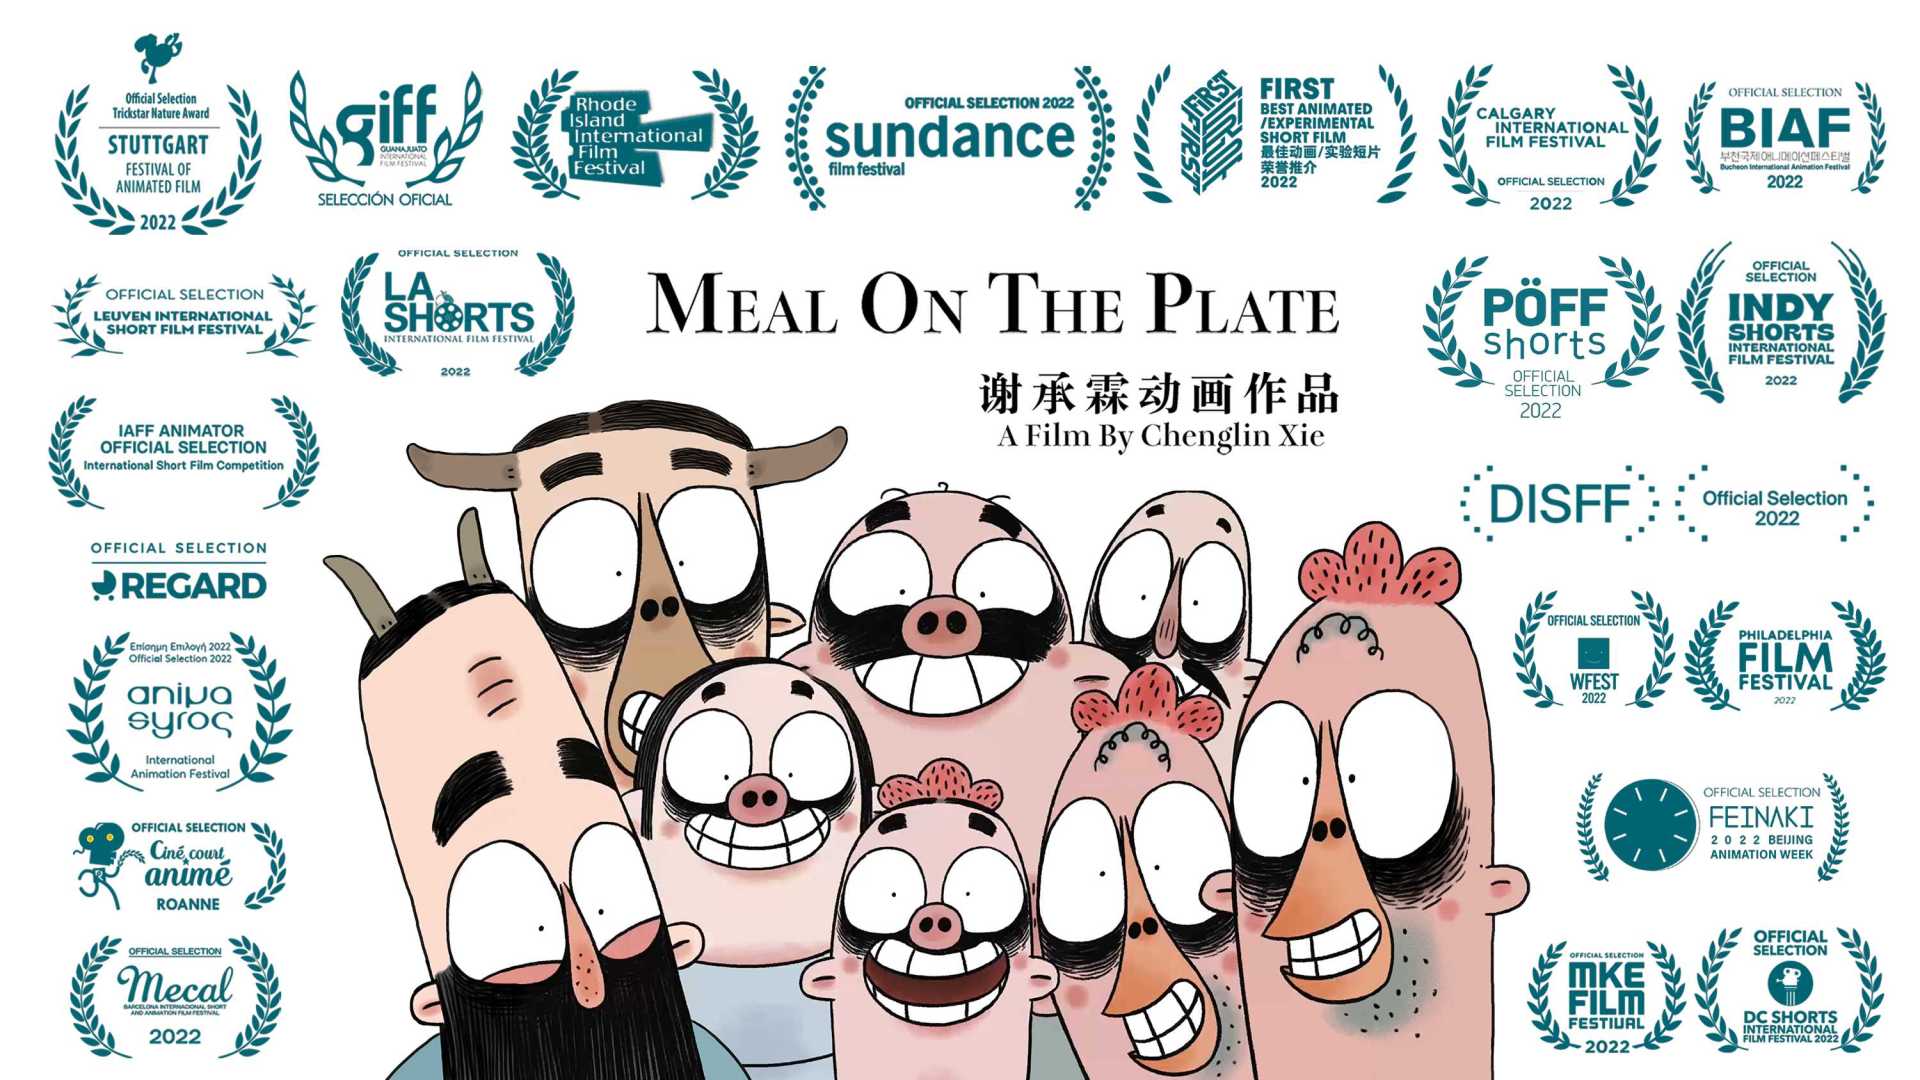 《盘中餐》/ Meal On The Plate - 预告片 - 谢承霖动画作品